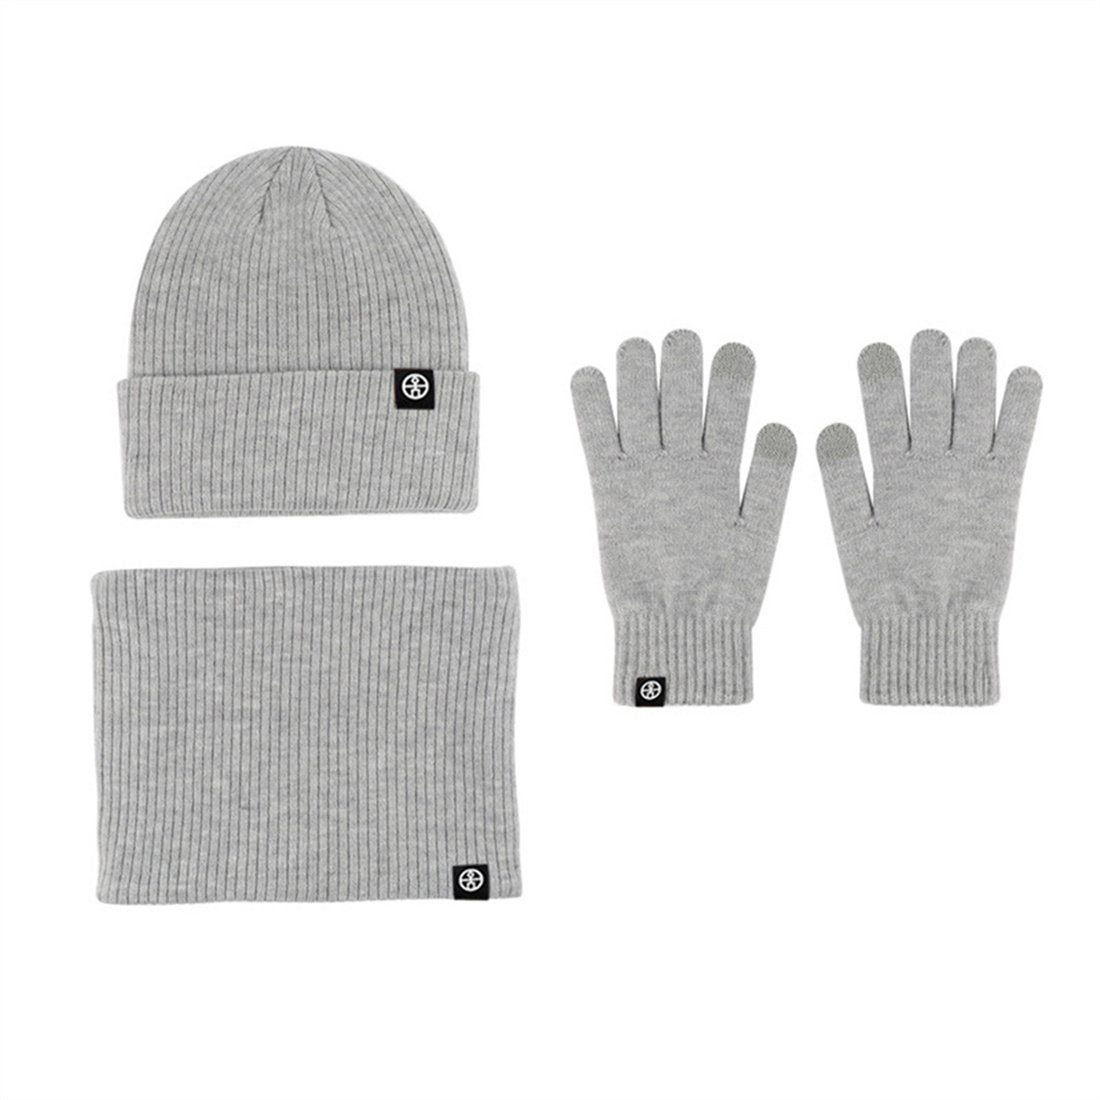 Grau DÖRÖY Winter Strickmütze Warmth Set, Handschuhe Schal 3 + Strickmütze Piece Unisex +